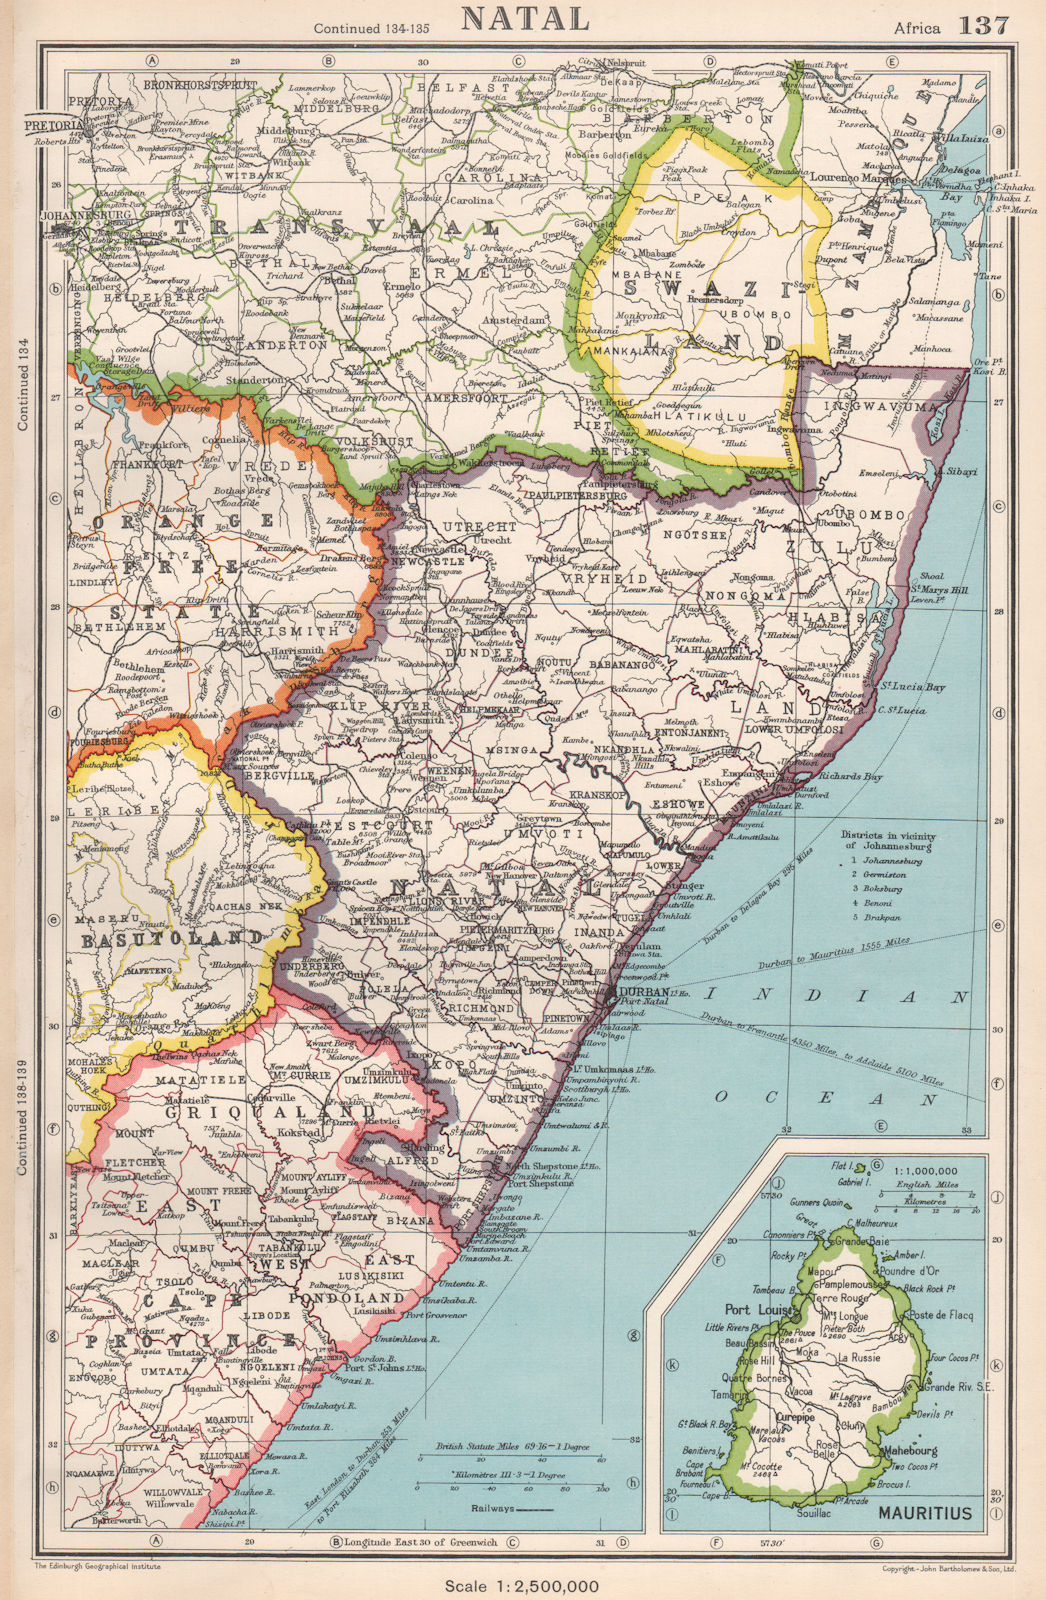 NATAL & SWAZILAND. inset Mauritius. South Africa. BARTHOLOMEW 1952 old map